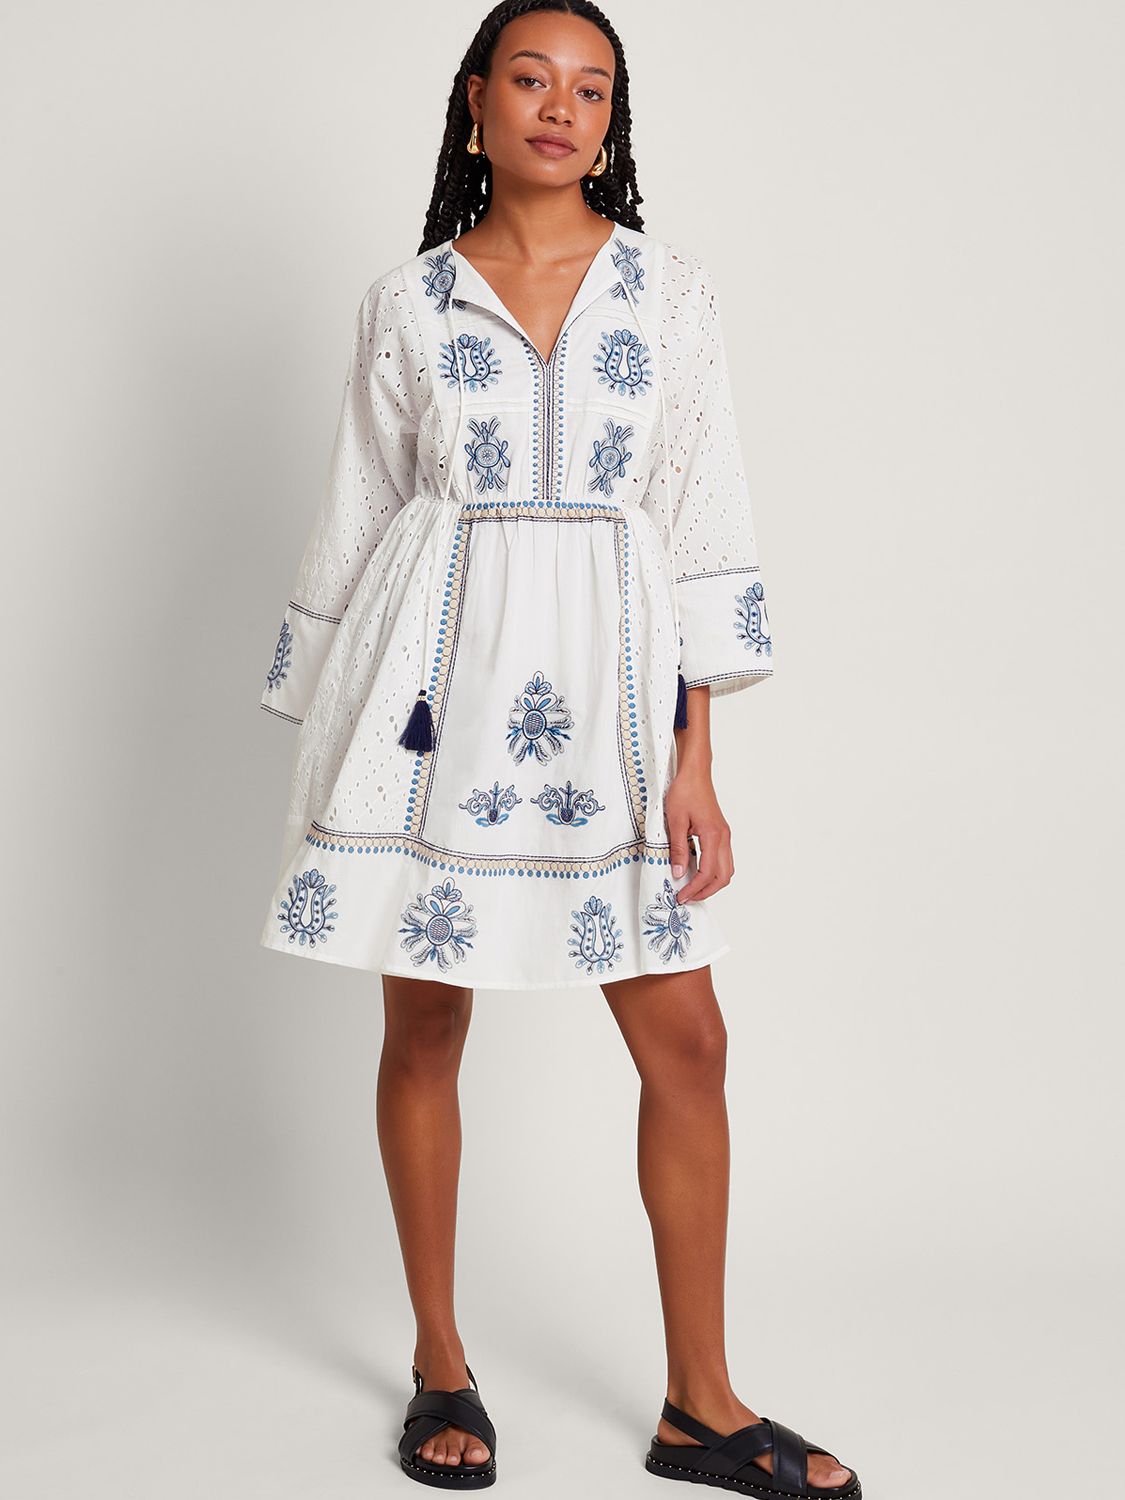 Monsoon Katied Embroidered Kaftan Dress, Ivory/Multi, S